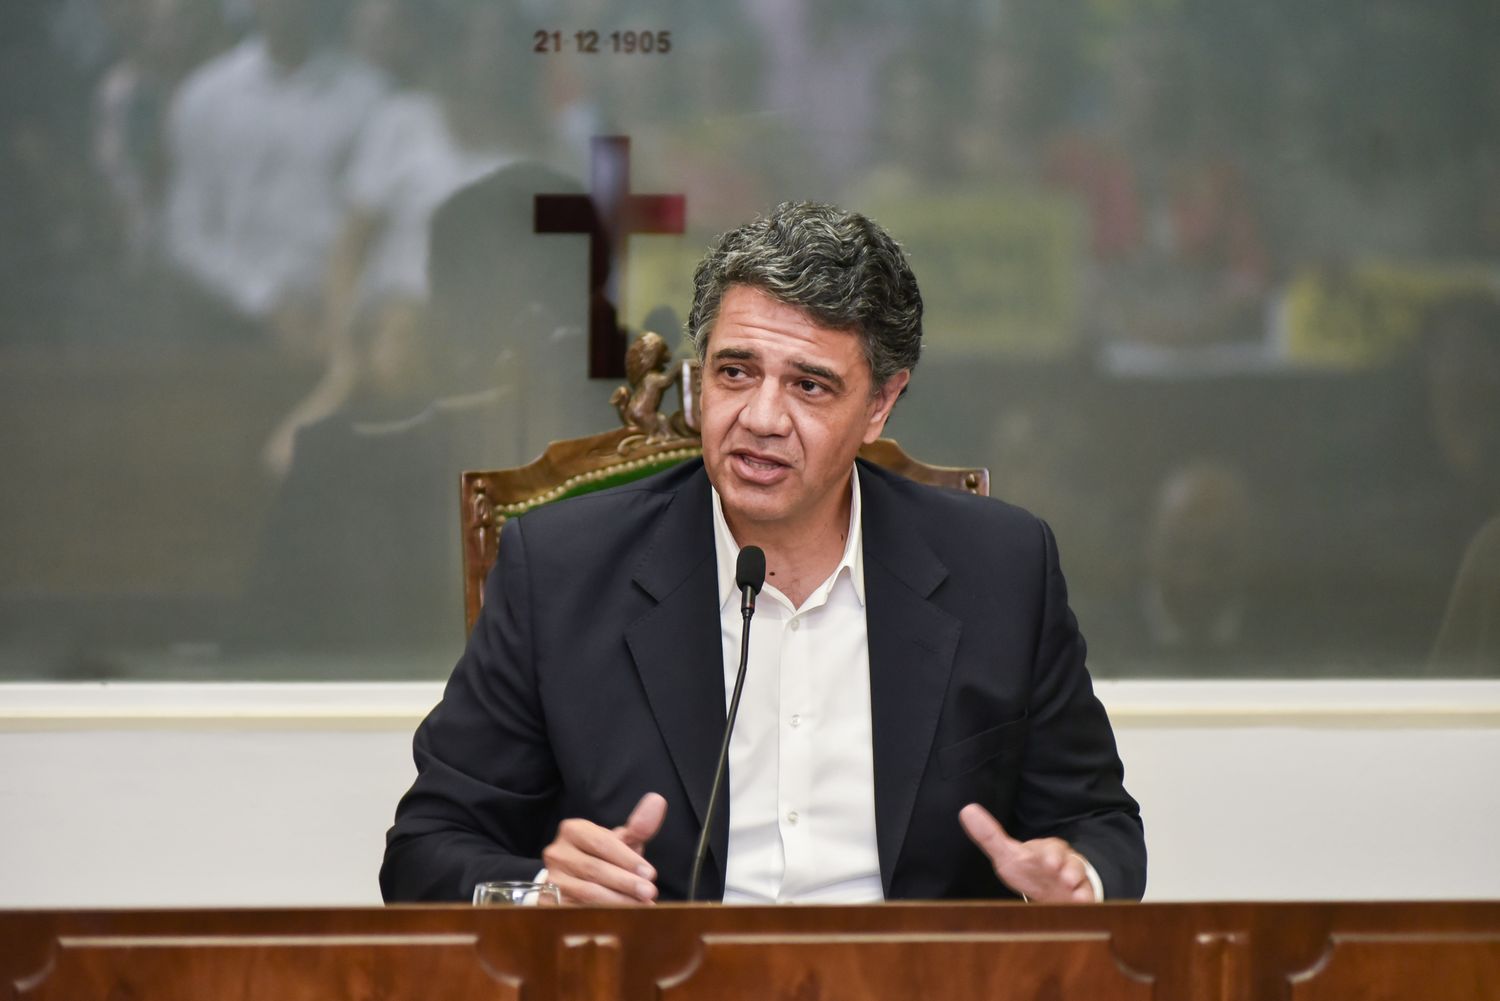 Asunción de Jorge Macri para su tercer mandato: "Que no se repita lo que sucedió en el pasado"